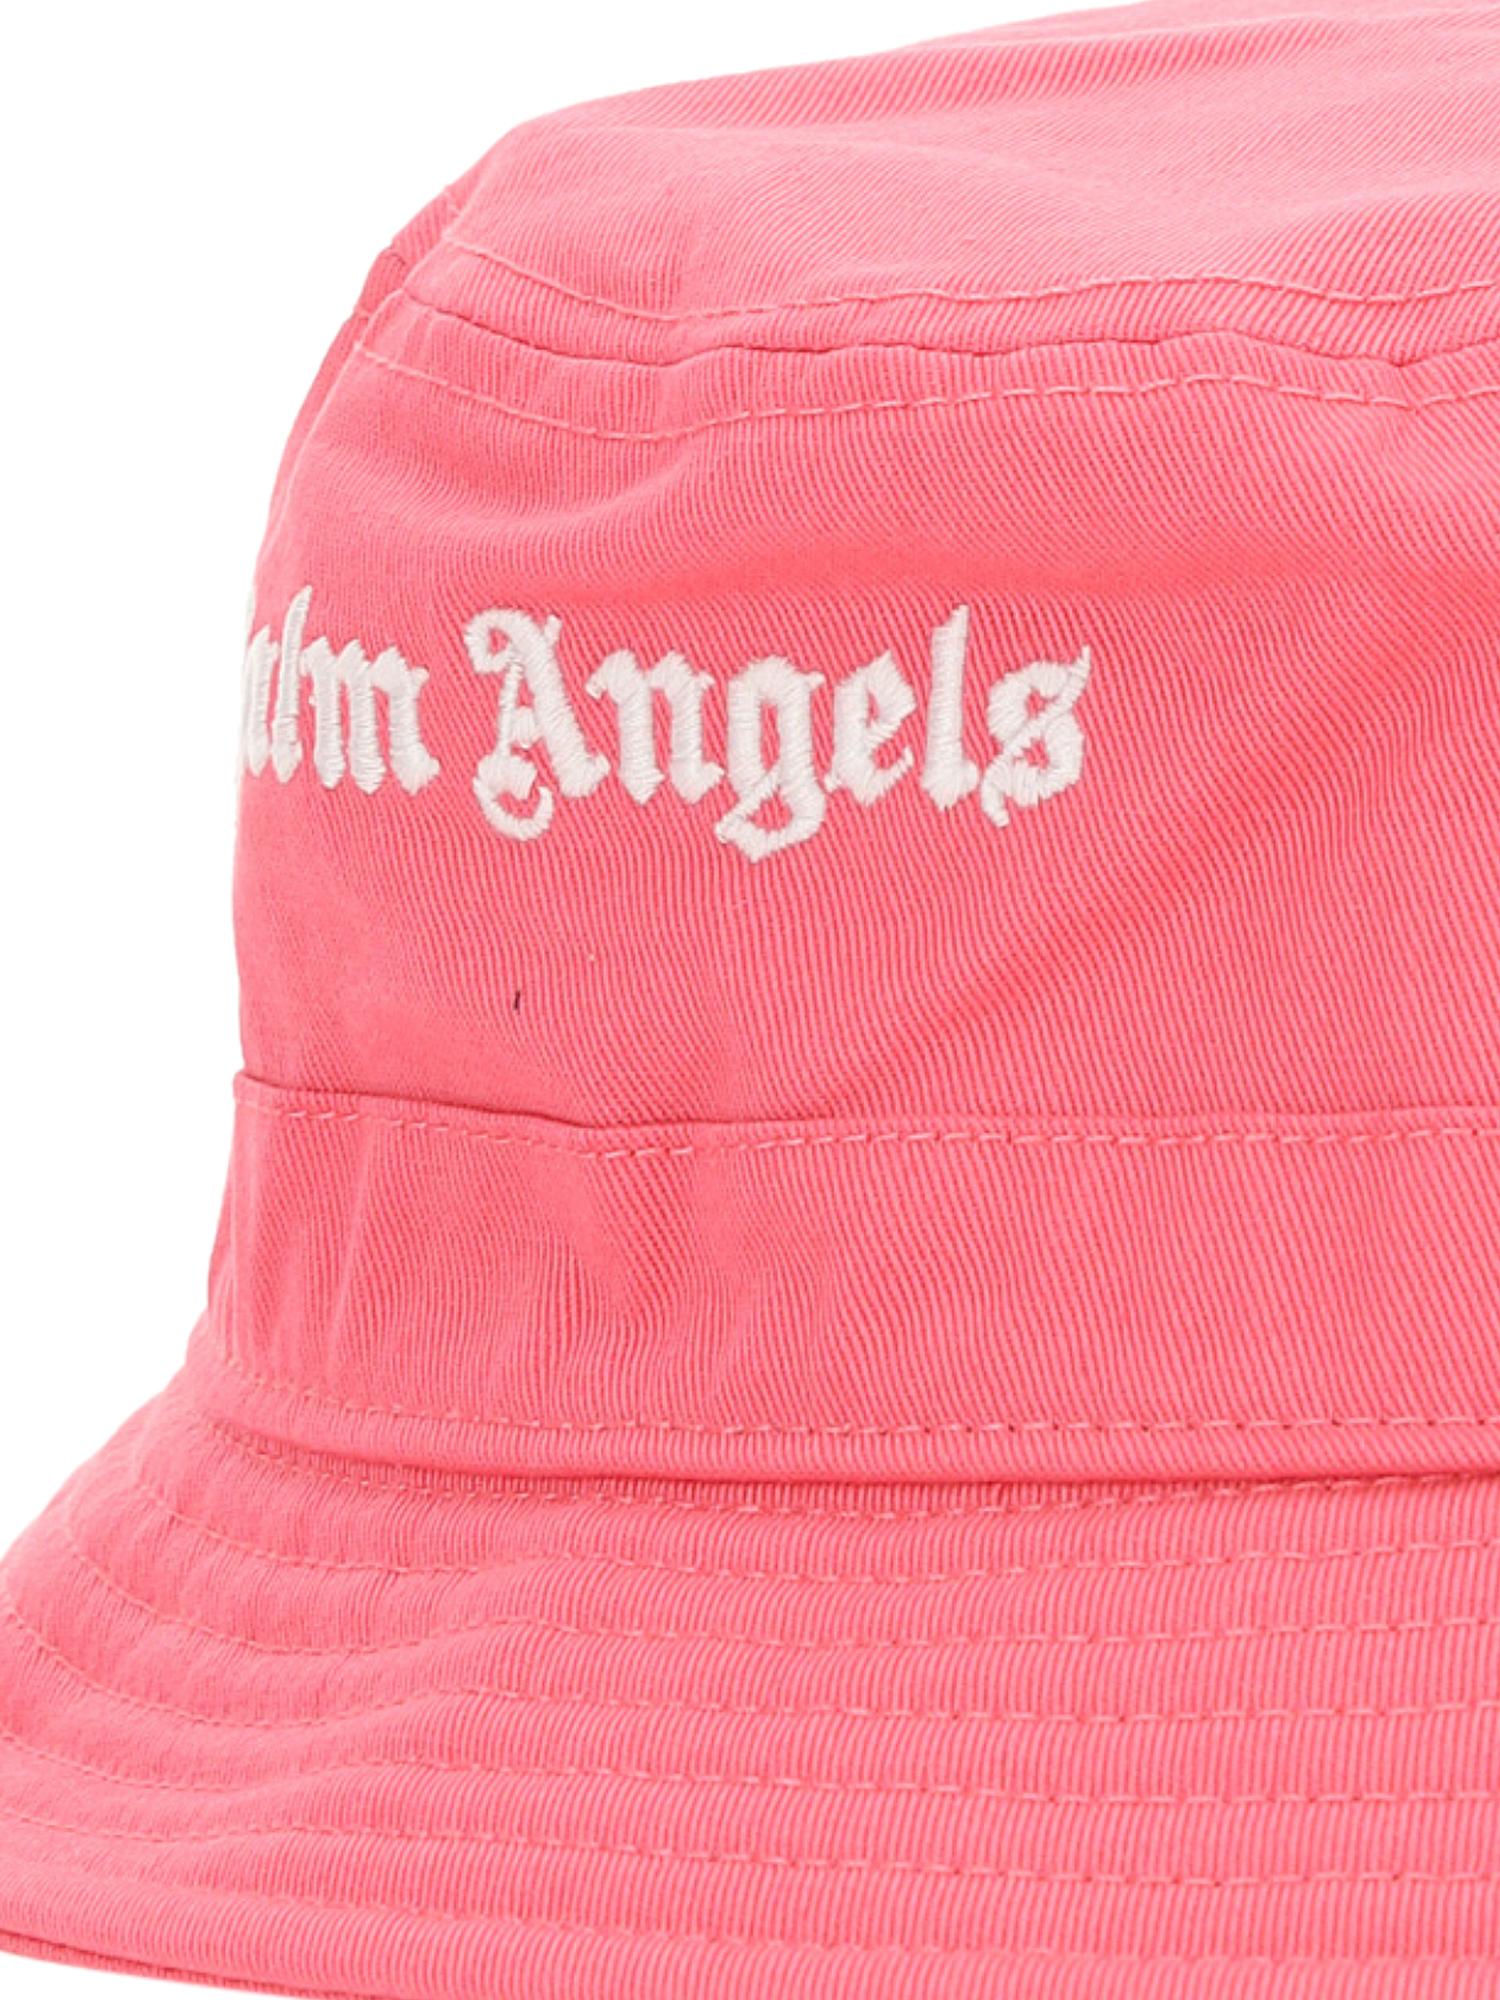 Chapeaux Pour Femme - Palm Angels - En Cotton Multicolor - Taille:  -